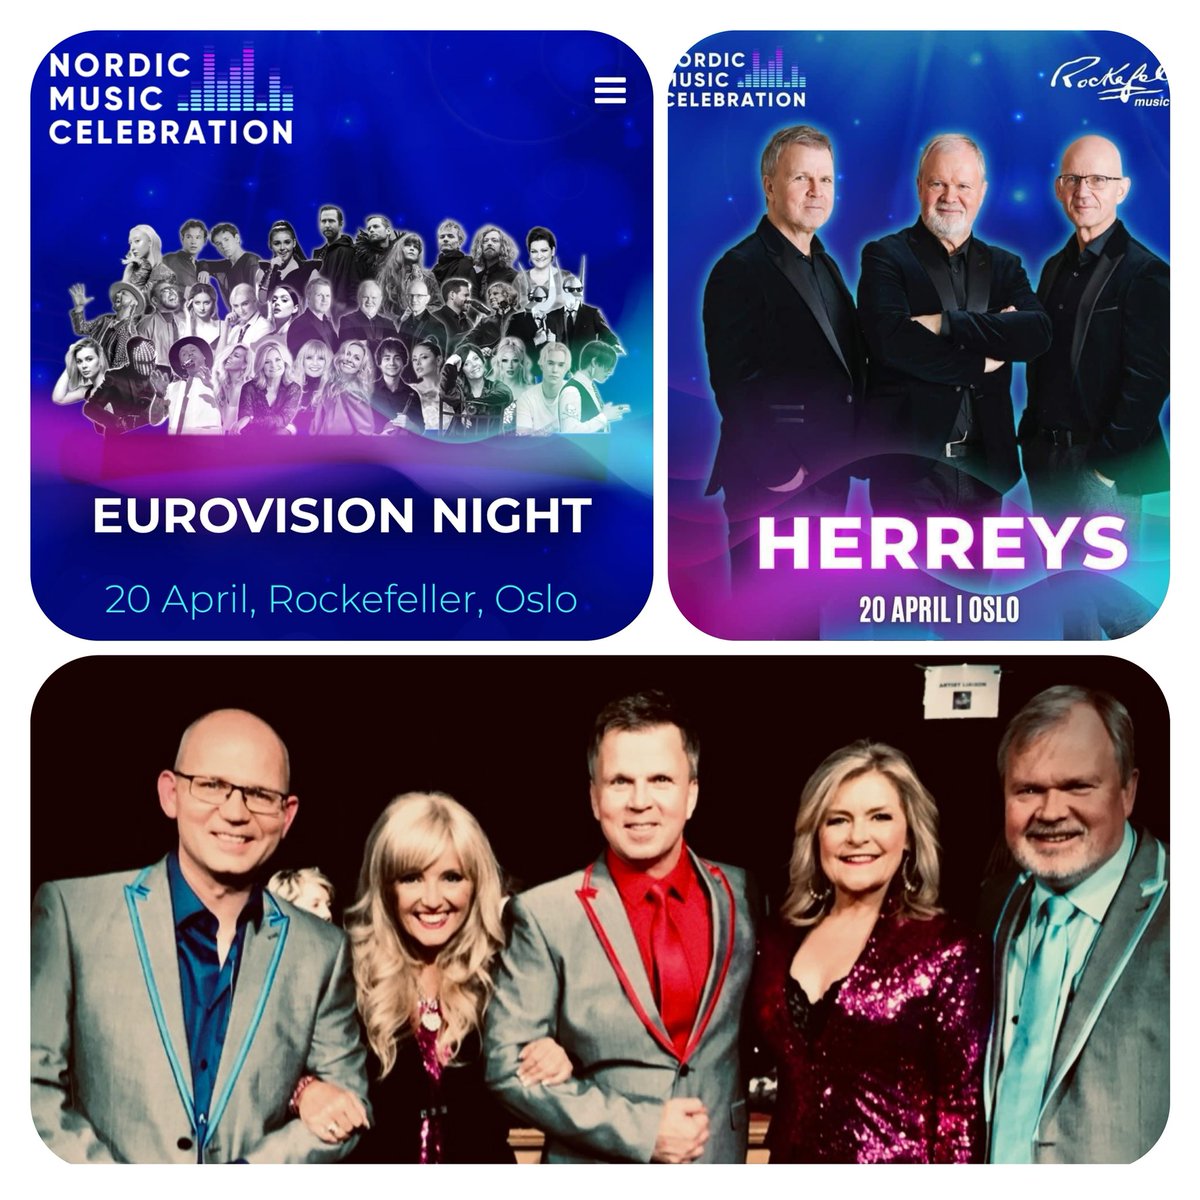 Nästa vecka fortsätter vårt jubileumsår. Oslo och Eurovision Night på schemat. #Herreys40 #Diggiloo40 nordicmusiccelebration.com